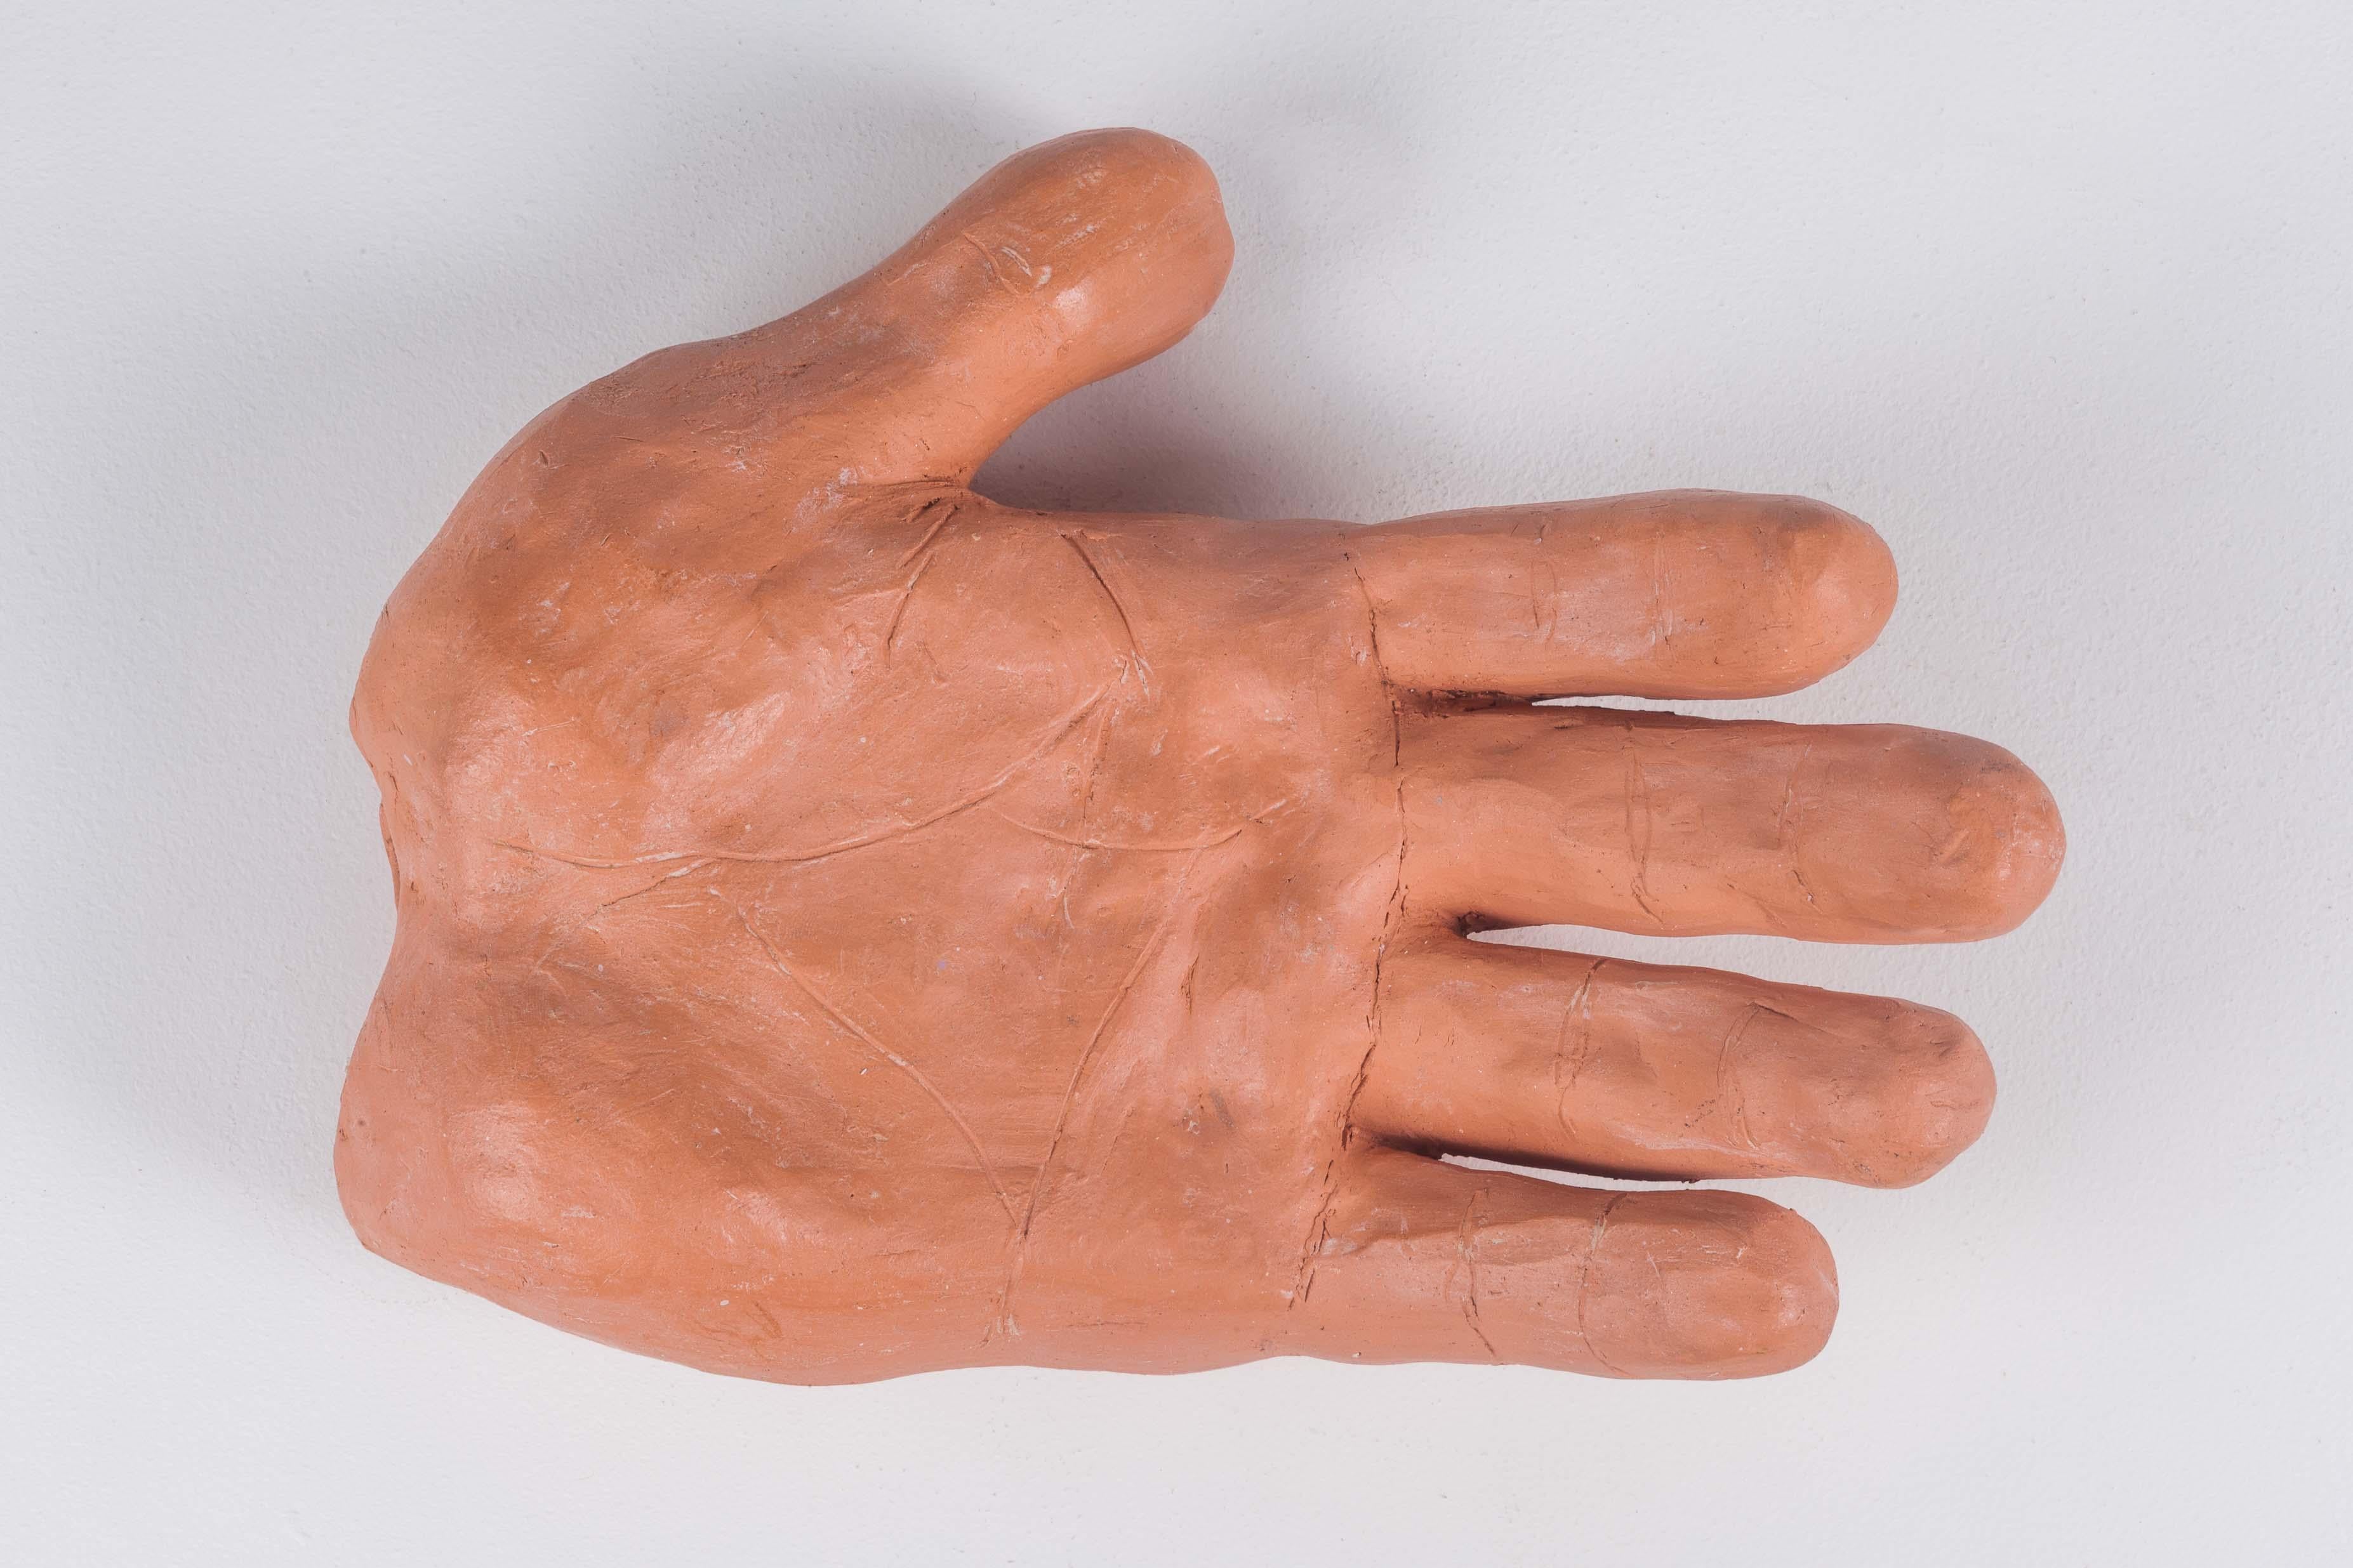 Grande sculpture/attaque de main rose faite à la main par un artiste américain inconnu. Surdimensionné, loufoque et dans ta face. Le toucher doux de l'argile ajoute un peu de vie à cette main tout droit sortie d'une bande dessinée. Une pièce